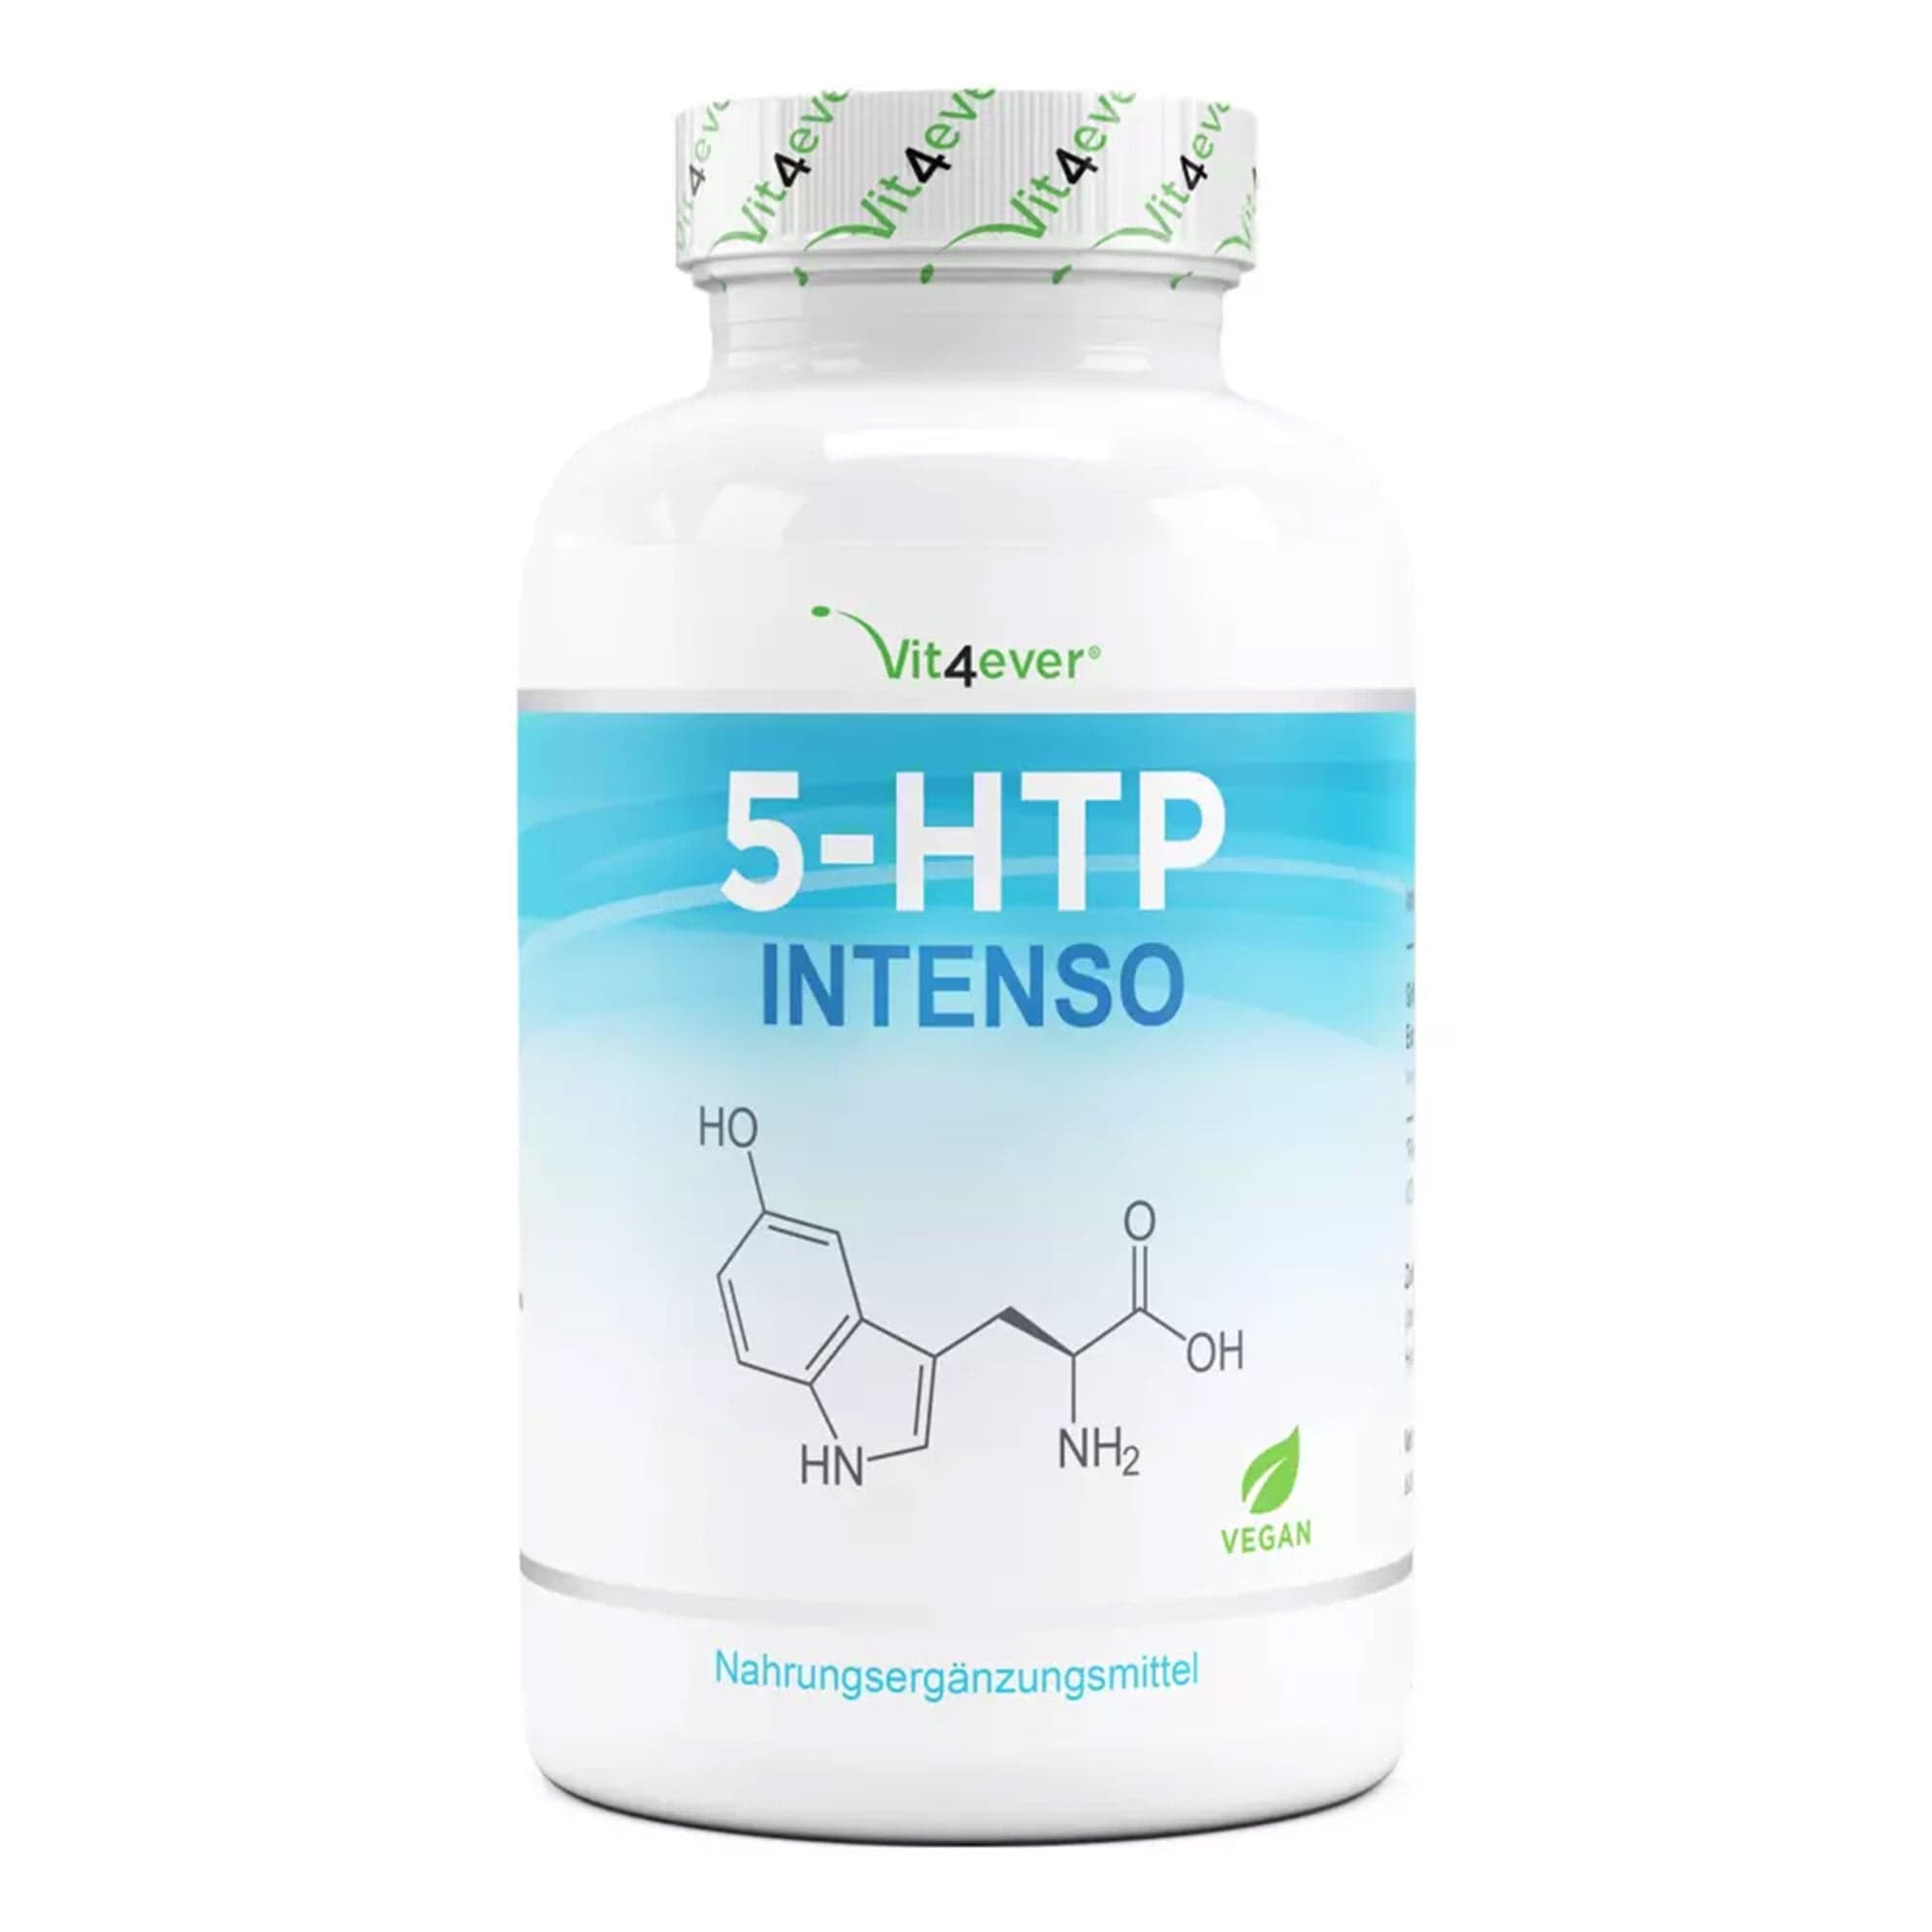 Vit4ever 5-HTP slaap supplement